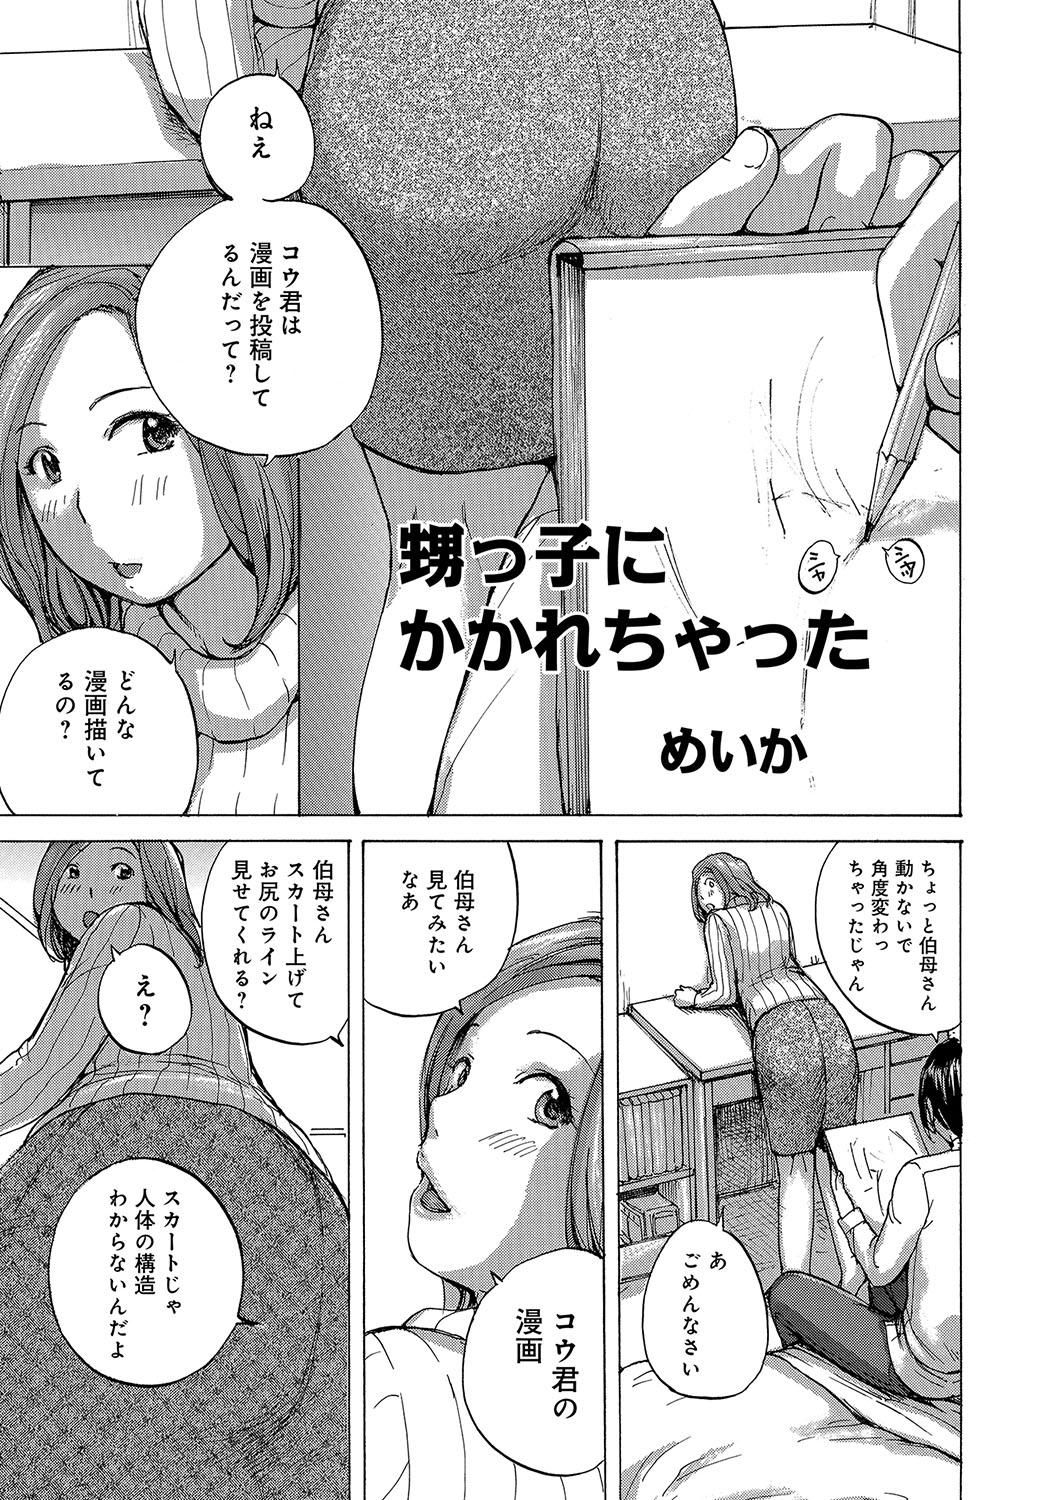 WEB Han Comic Geki Yaba! Vol.96 37